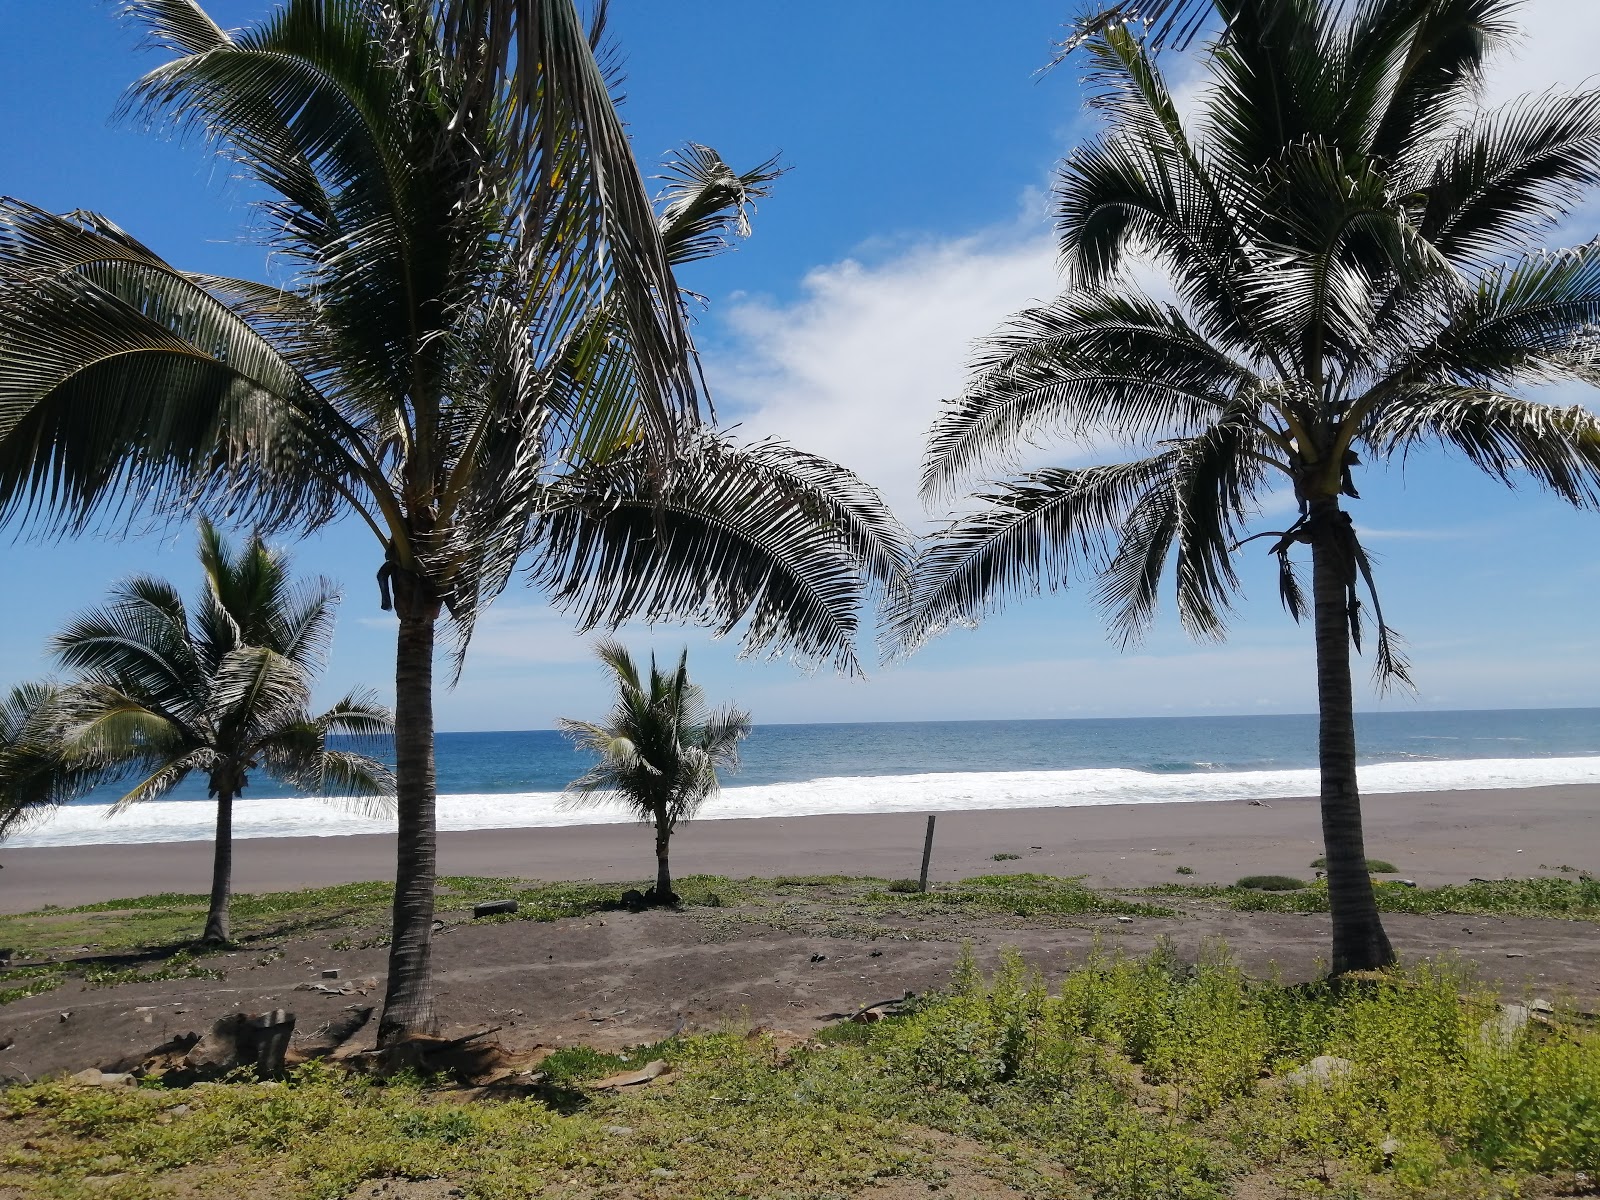 Fotografie cu Playa "El Eden" - locul popular printre cunoscătorii de relaxare